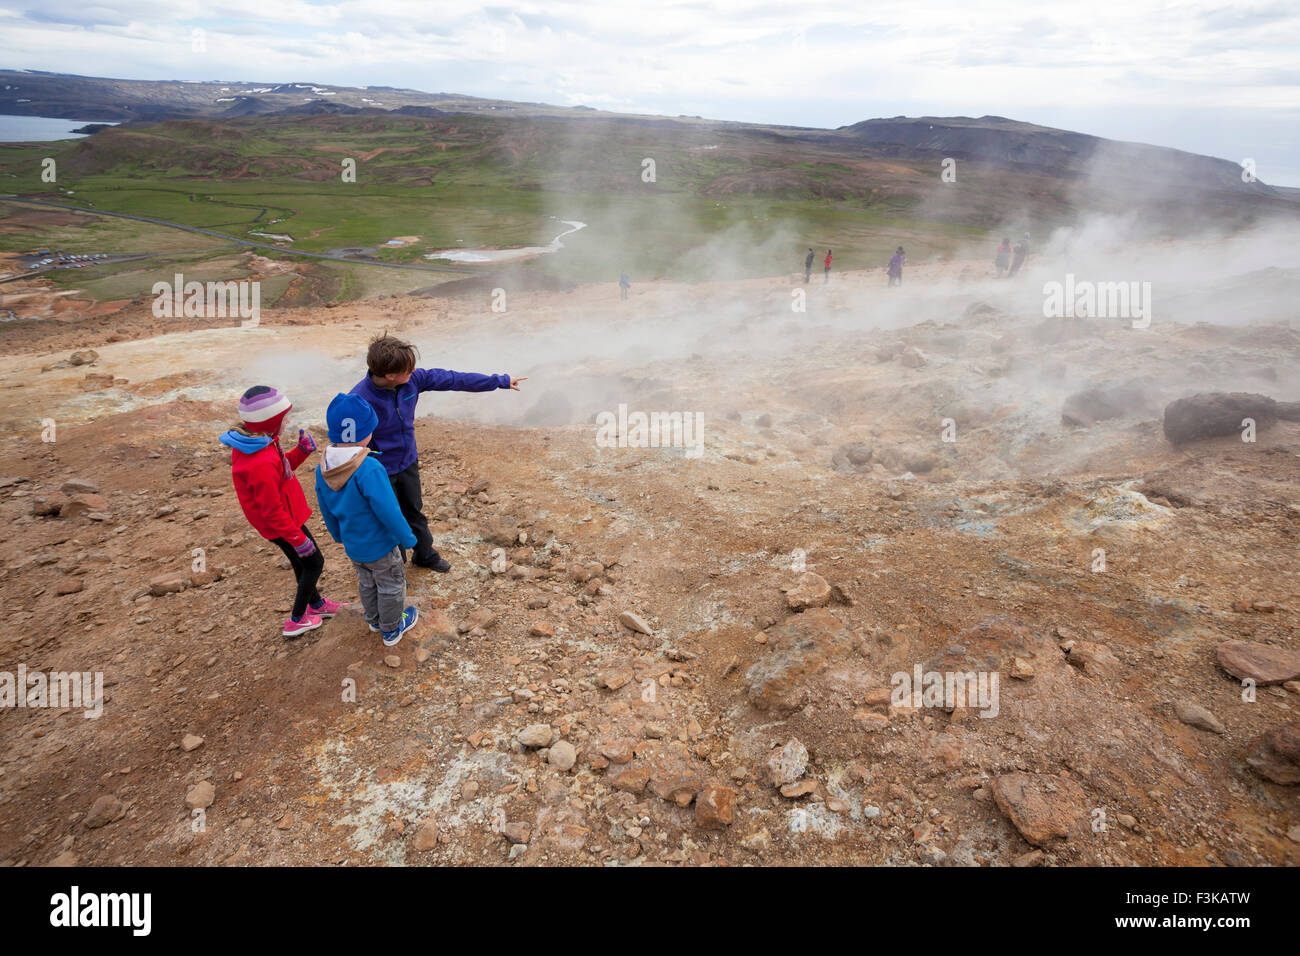 Besucher neben dampfenden Vulkanschlote bei Seltun, Krysuvik geothermische Gebiet, Halbinsel Reykjanes, Island. Stockfoto